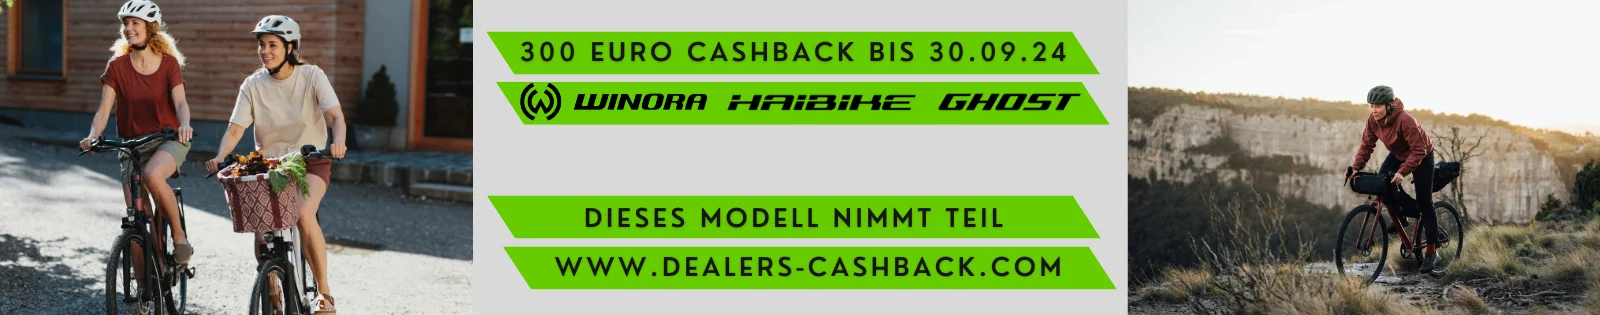 cashback 300 euro